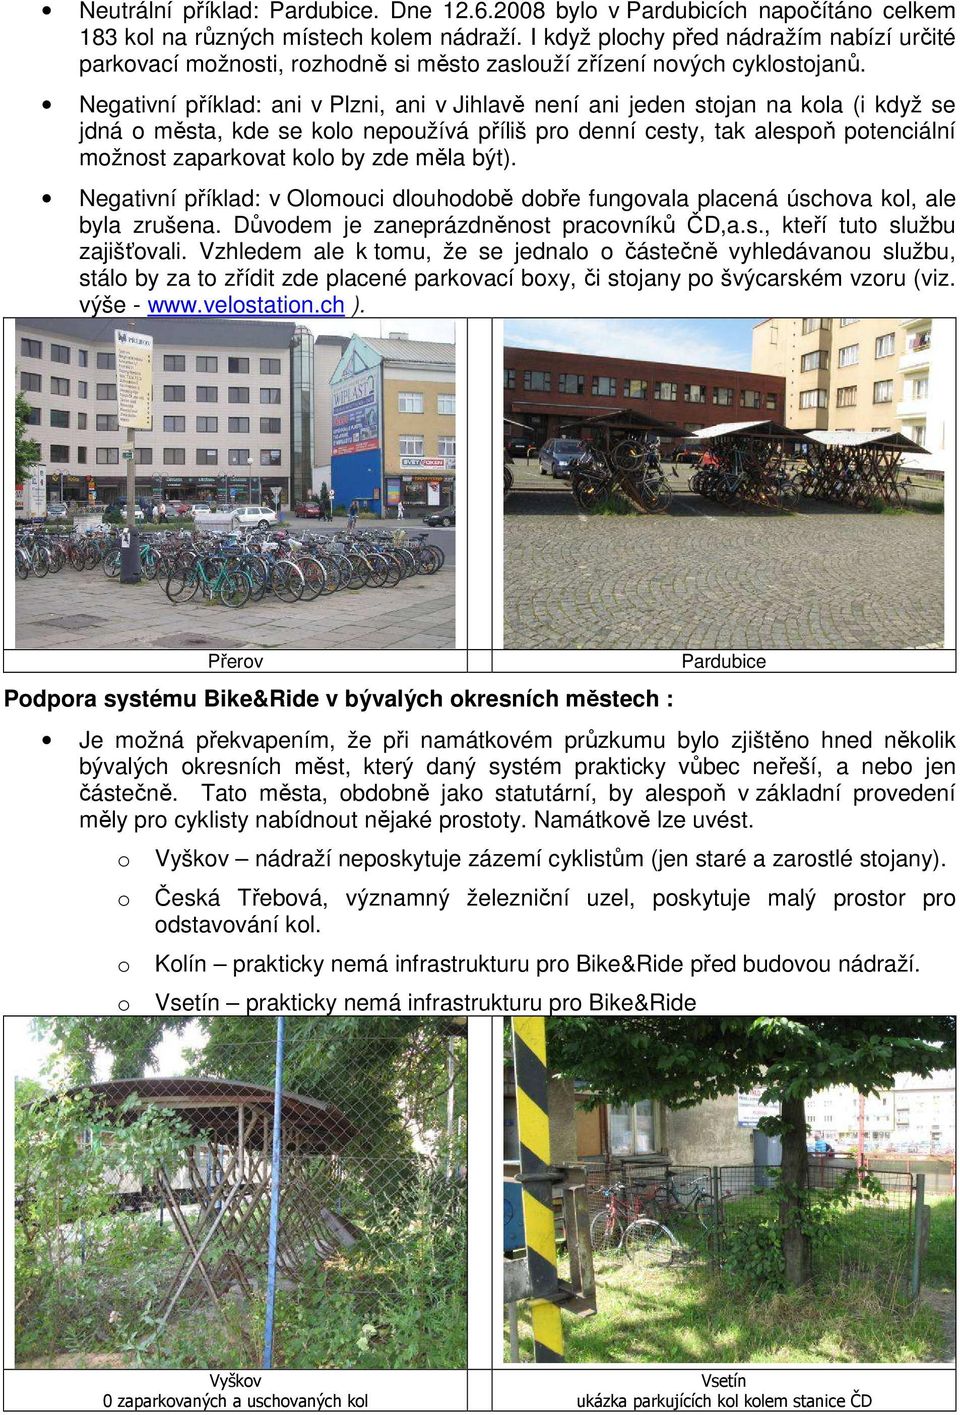 Negativní příklad: ani v Plzni, ani v Jihlavě není ani jeden stojan na kola (i když se jdná o města, kde se kolo nepoužívá příliš pro denní cesty, tak alespoň potenciální možnost zaparkovat kolo by